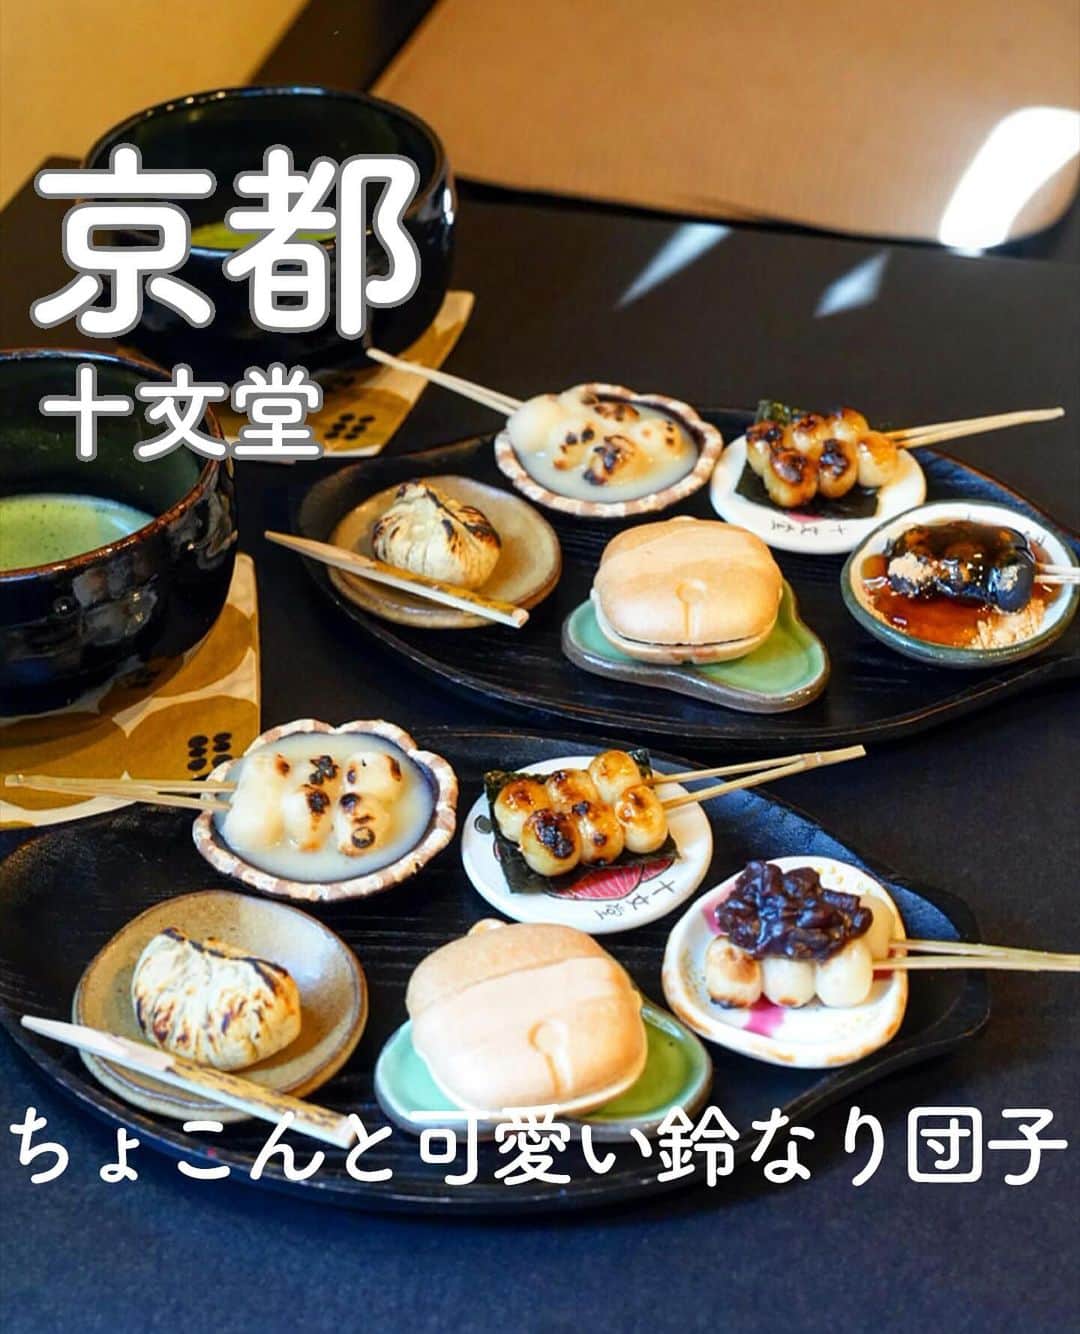 RETRIP<リトリップ>グルメのインスタグラム：「【RETRIP×京都🍵】 こちらは、京都・祇園にある「十文堂」です。八坂の近くにある甘味処で、1口サイズの”鈴なり団子”が名物となっています。手作りのお抹茶や最中、炙り栗きんとんなどを楽しめる「団暖（だんだん）」は見た目も味も2度楽しめるセットです🍡5つの味を少しずつ堪能してみてくださいね✨  [スポット情報] 📍住所： 京都市東山区玉水町76（東大路通八坂通下ル） 🚃最寄り駅：祇園四条駅より徒歩11分 🕐営業時間：11:00〜18:00 🗓定休日：水・木 📝予約：不可  ※投稿時の情報となります  ・  Photo by @chika2745 ______________________________  全国で話題のスイーツを紹介しているアカウントです！ 他の投稿はこちらから！ >> @retrip_gourmet  ______________________________  RETRIPでは「おでかけ」に関する様々な情報を発信しています。ぜひ他のアカウントもチェックしてくださいね！ . @retrip_news 最新のおでかけ情報を紹介 @retrip_nippon 日本の絶景を紹介 @retrip_global 海外の絶景を紹介 @retrip_gourmet 全国の話題のグルメを紹介 @retrip_cafe 全国のおしゃれなカフェを紹介 . ▼RETRIP[リトリップ]のアプリ 最新情報をまとめてご覧になりたい方には『RETRIPアプリ』がおすすめ！明日のお出かけにすぐ活かせるアイディアが盛りだくさんです✨プロフィールのURLからダウンロードできますので、ぜひご利用ください。 .  ______________________________  #retrip #リトリップ #retrip_groumet #retrip_cafe #国内グルメ #東京グルメ #国内カフェ #東京カフェ #グルメ日記 #飯テロ #食べ歩き #groumetstagram #japanesefood #カフェ #スイーツ #カフェ巡り #かふぇすたぐらむ #スイーツ好きと繋がりたい #instafood #京都 #京都カフェ #京都グルメ #十文堂 #甘味処 #和菓子 #和カフェ」